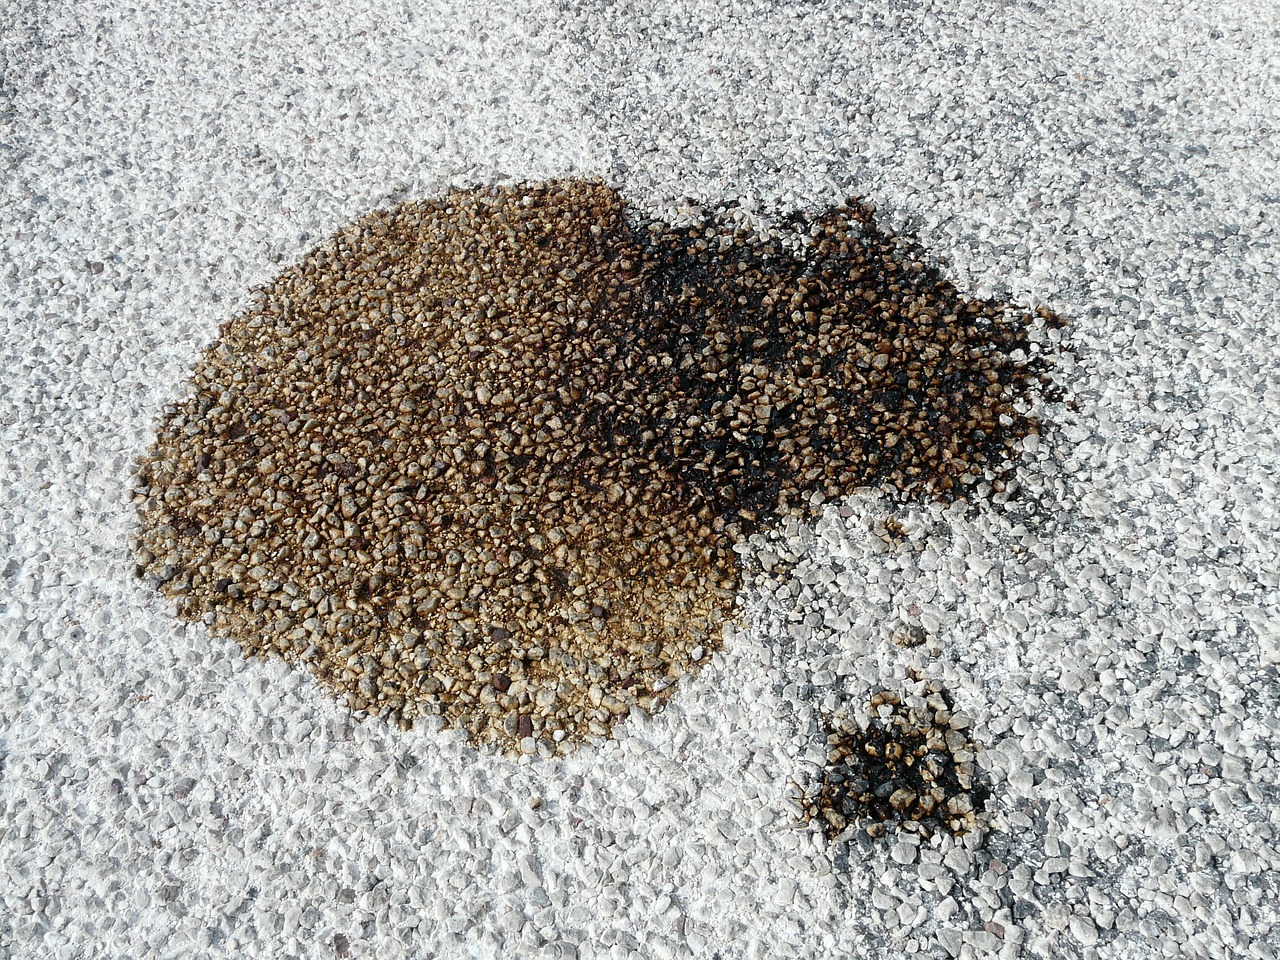 Comment enlever une tache de gasoil sur le sol bitumé ?